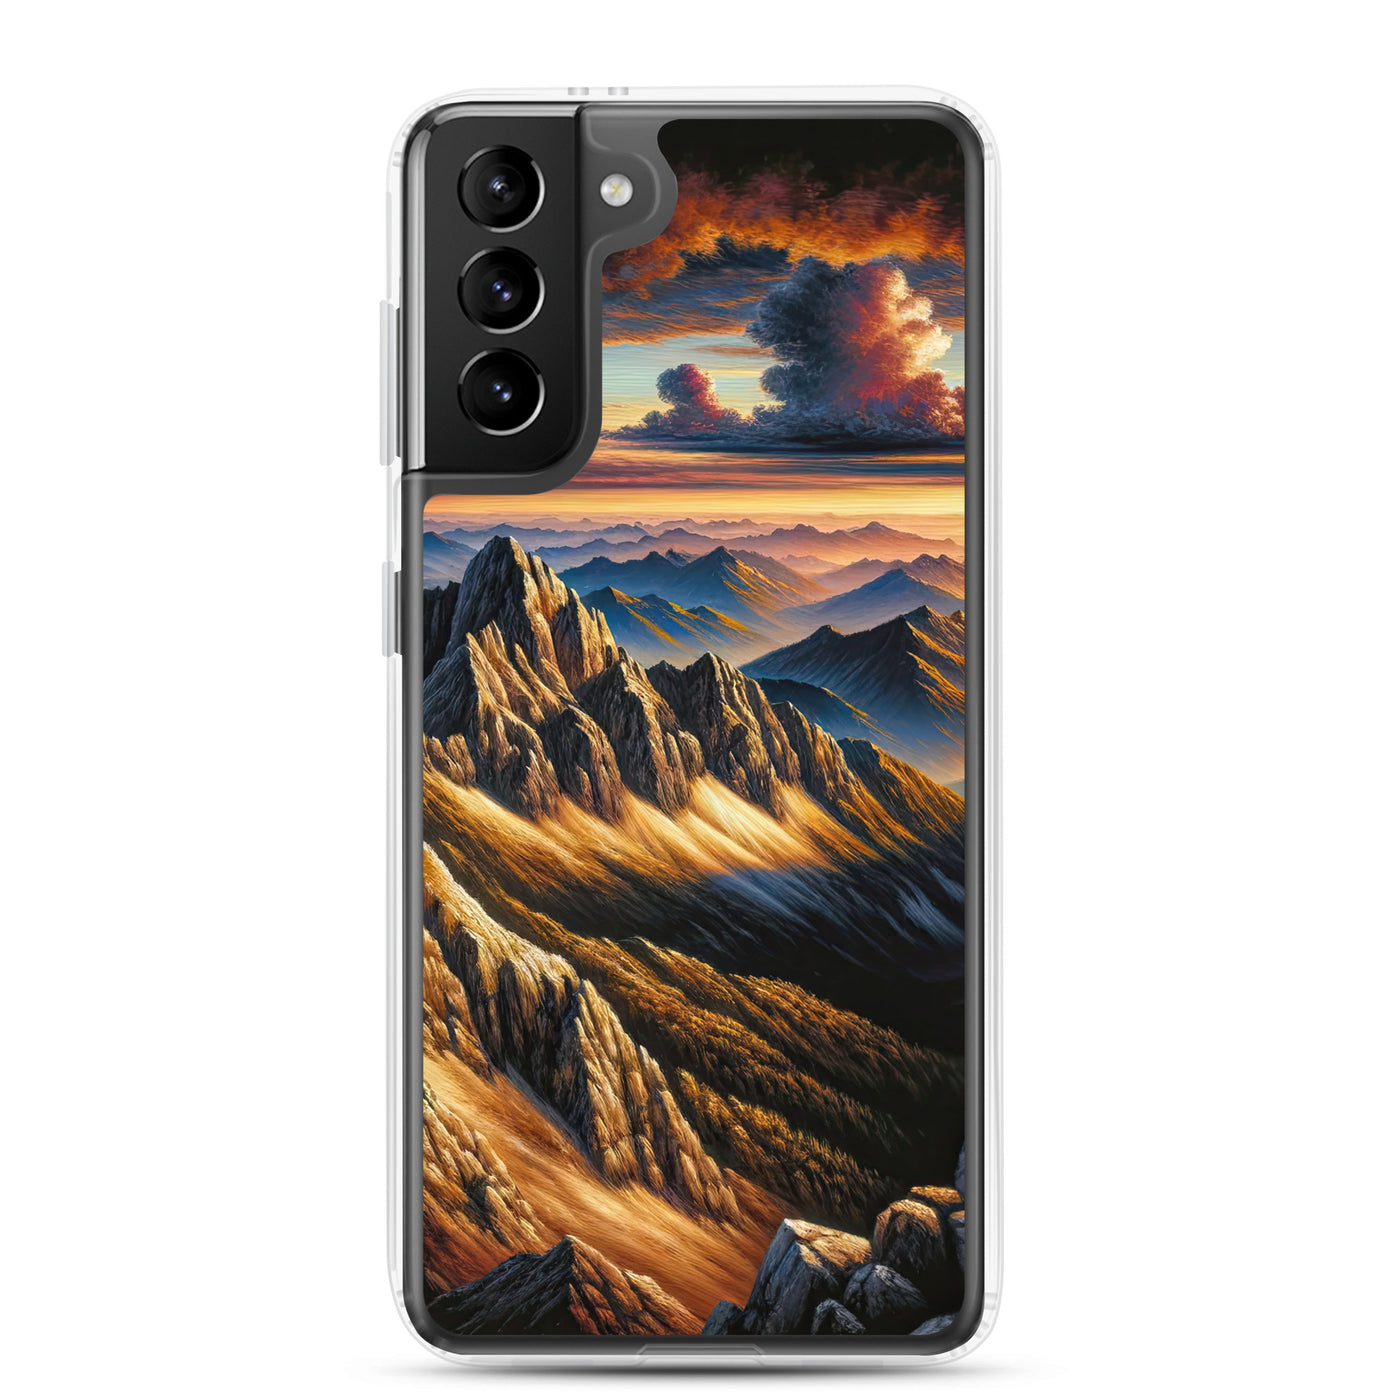 Alpen in Abenddämmerung: Acrylgemälde mit beleuchteten Berggipfeln - Samsung Schutzhülle (durchsichtig) berge xxx yyy zzz Samsung Galaxy S21 Plus